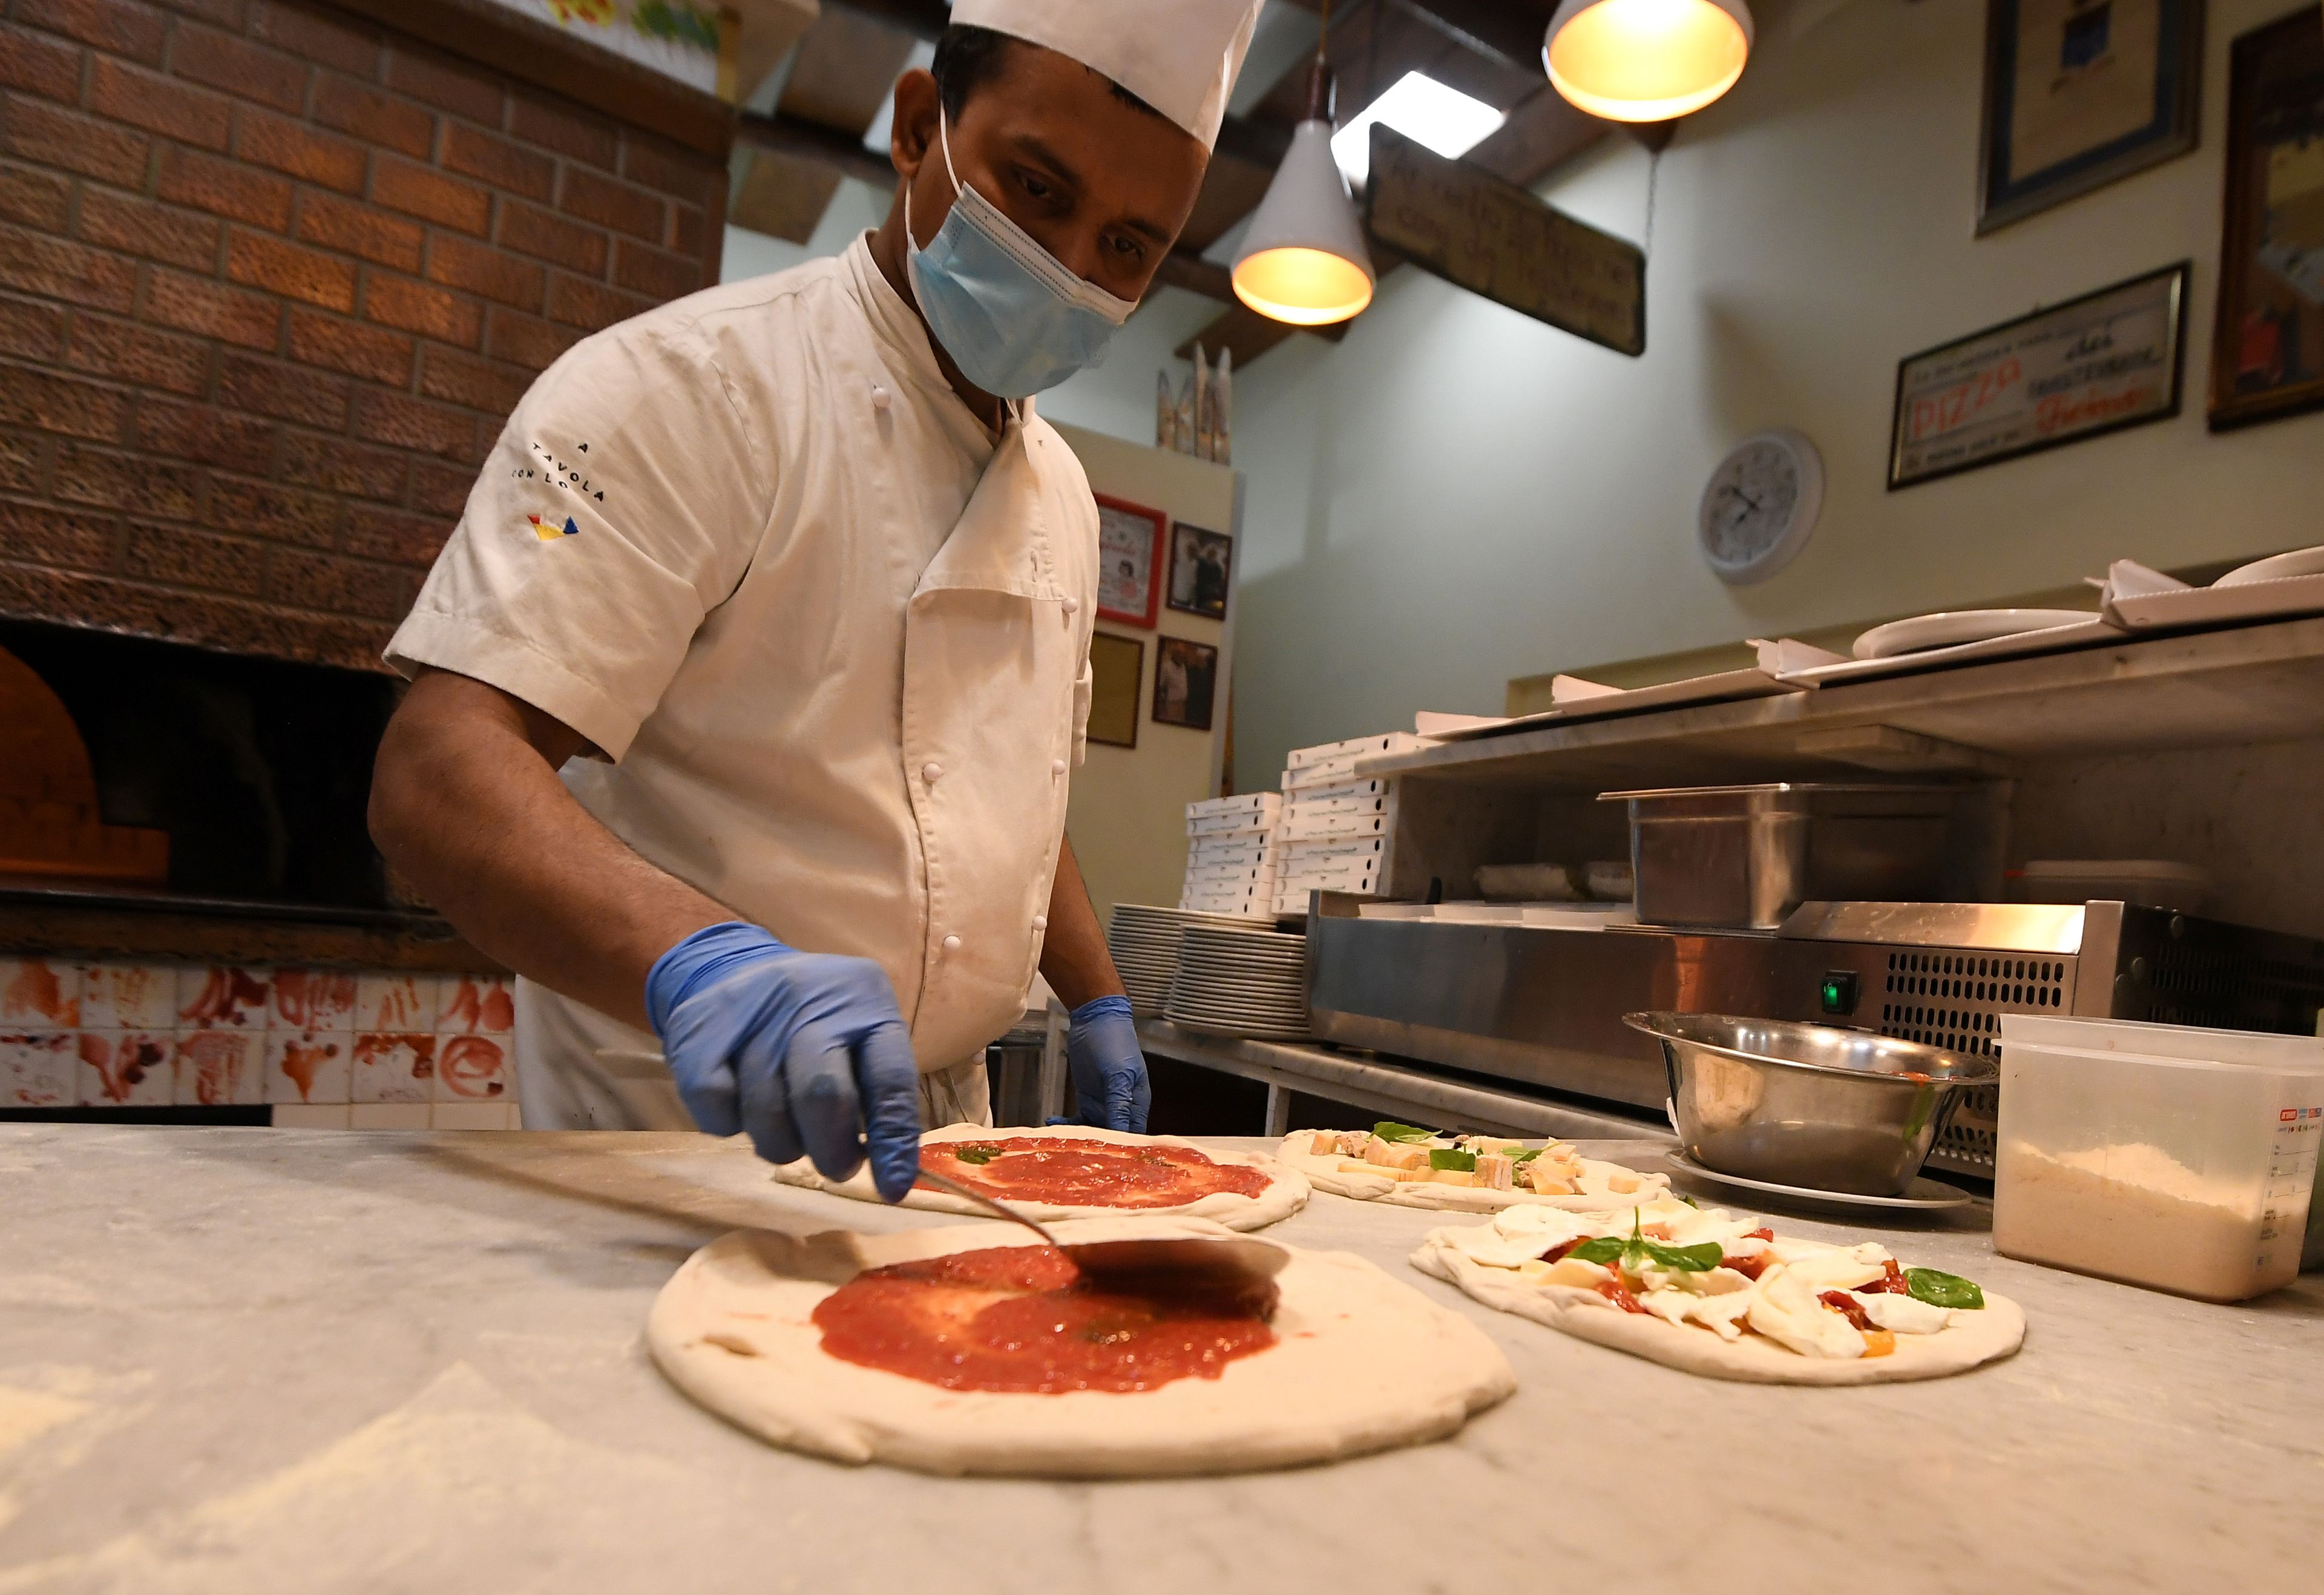 Las 6 novedades de Mercadona más destacadas de la semana: una pizza vegetariana traída de Italia, 2 productos que son un éxito de ventas y un pan con pistacho y frutos rojos